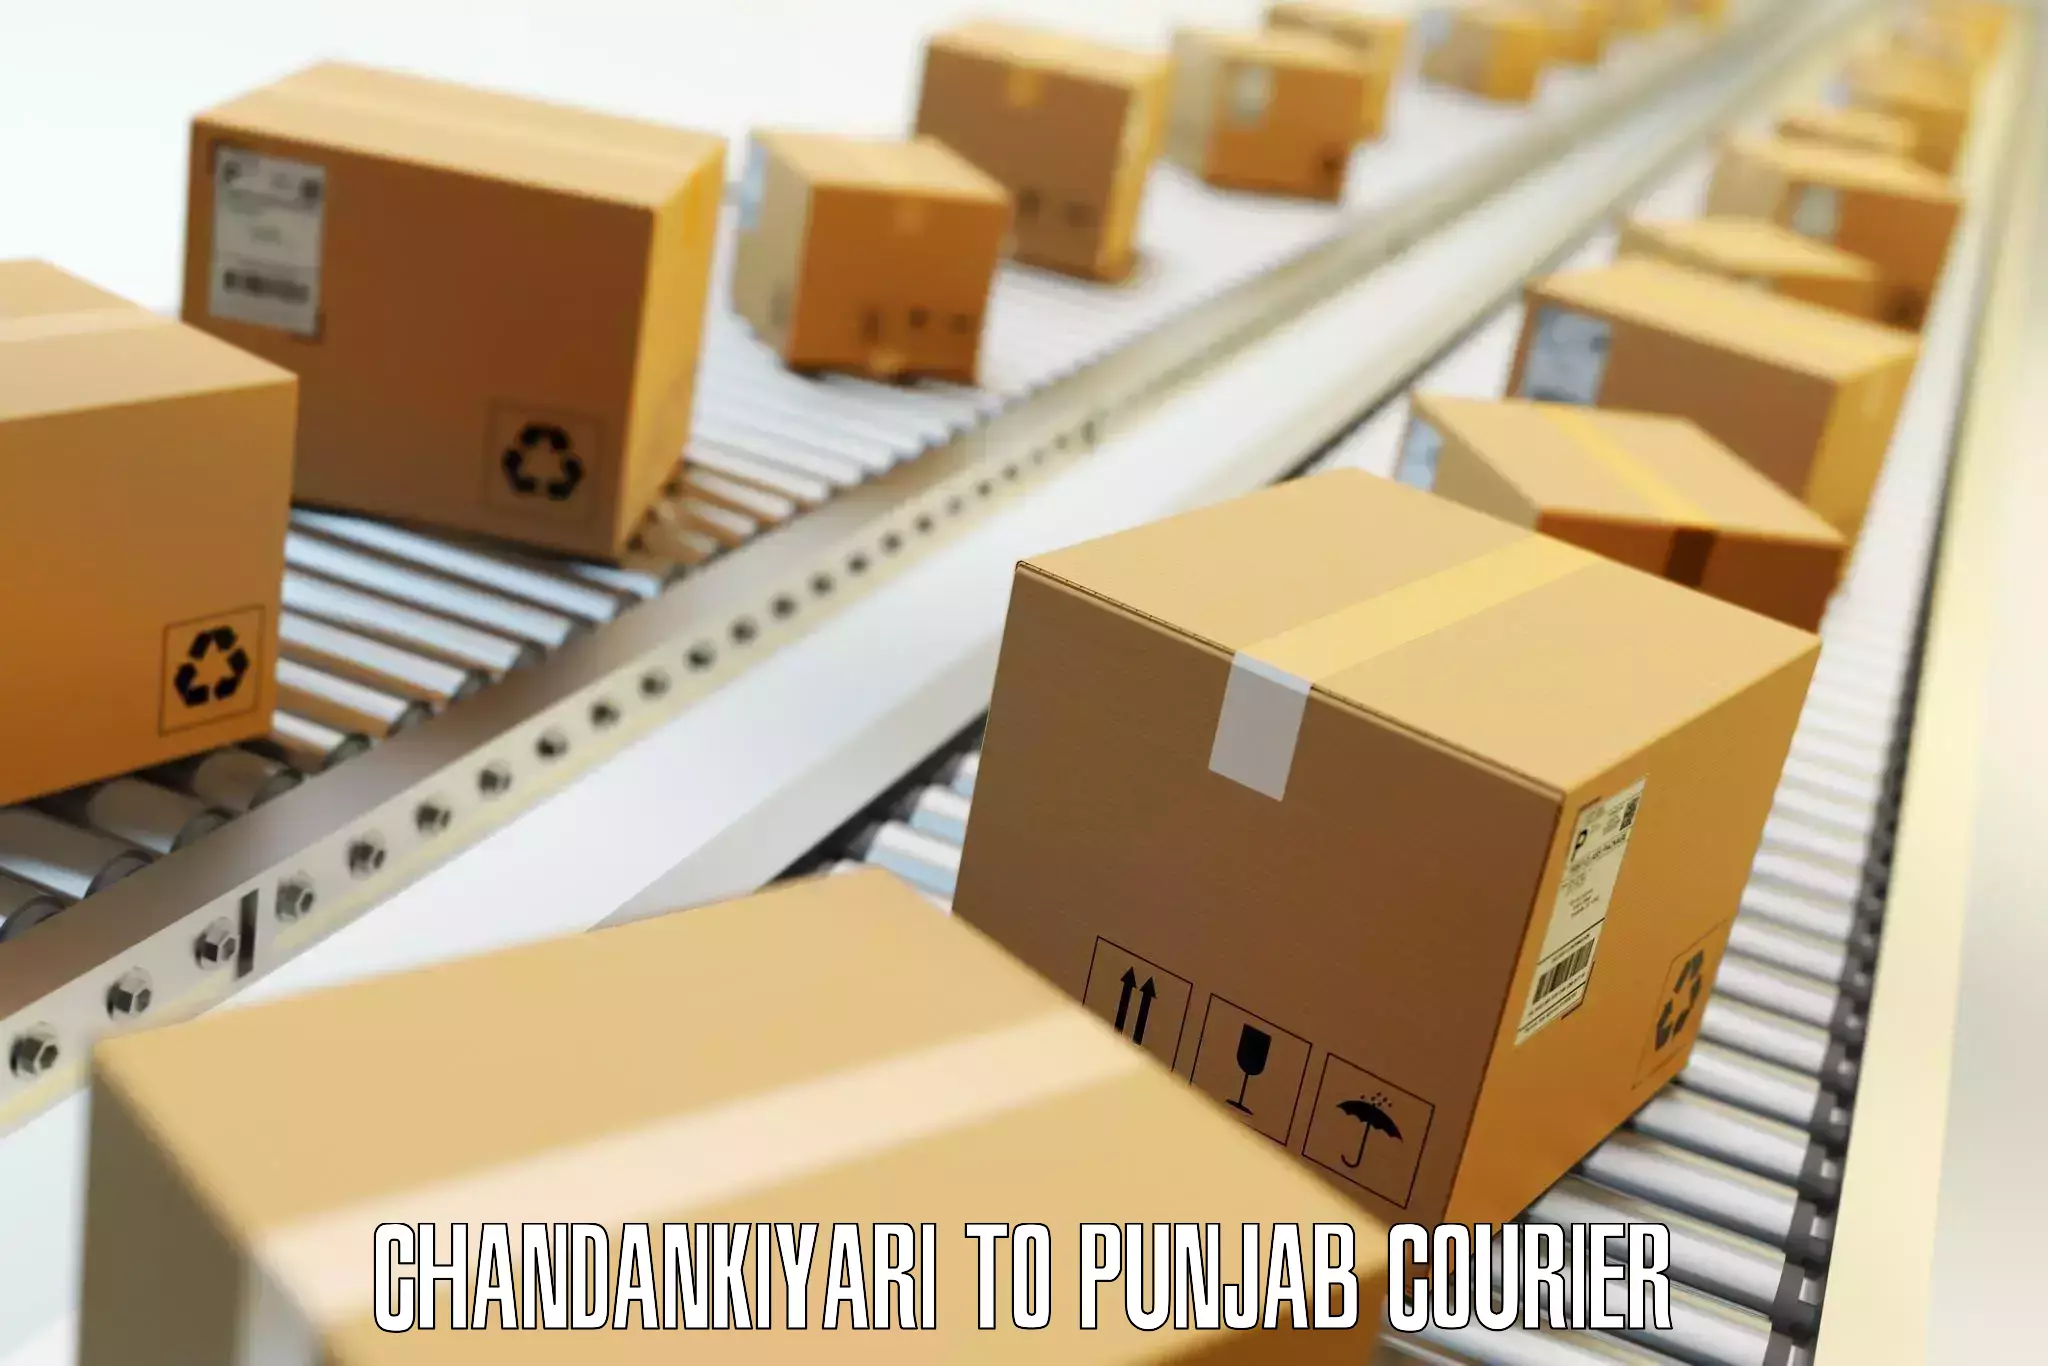 Budget-friendly baggage courier Chandankiyari to Punjab